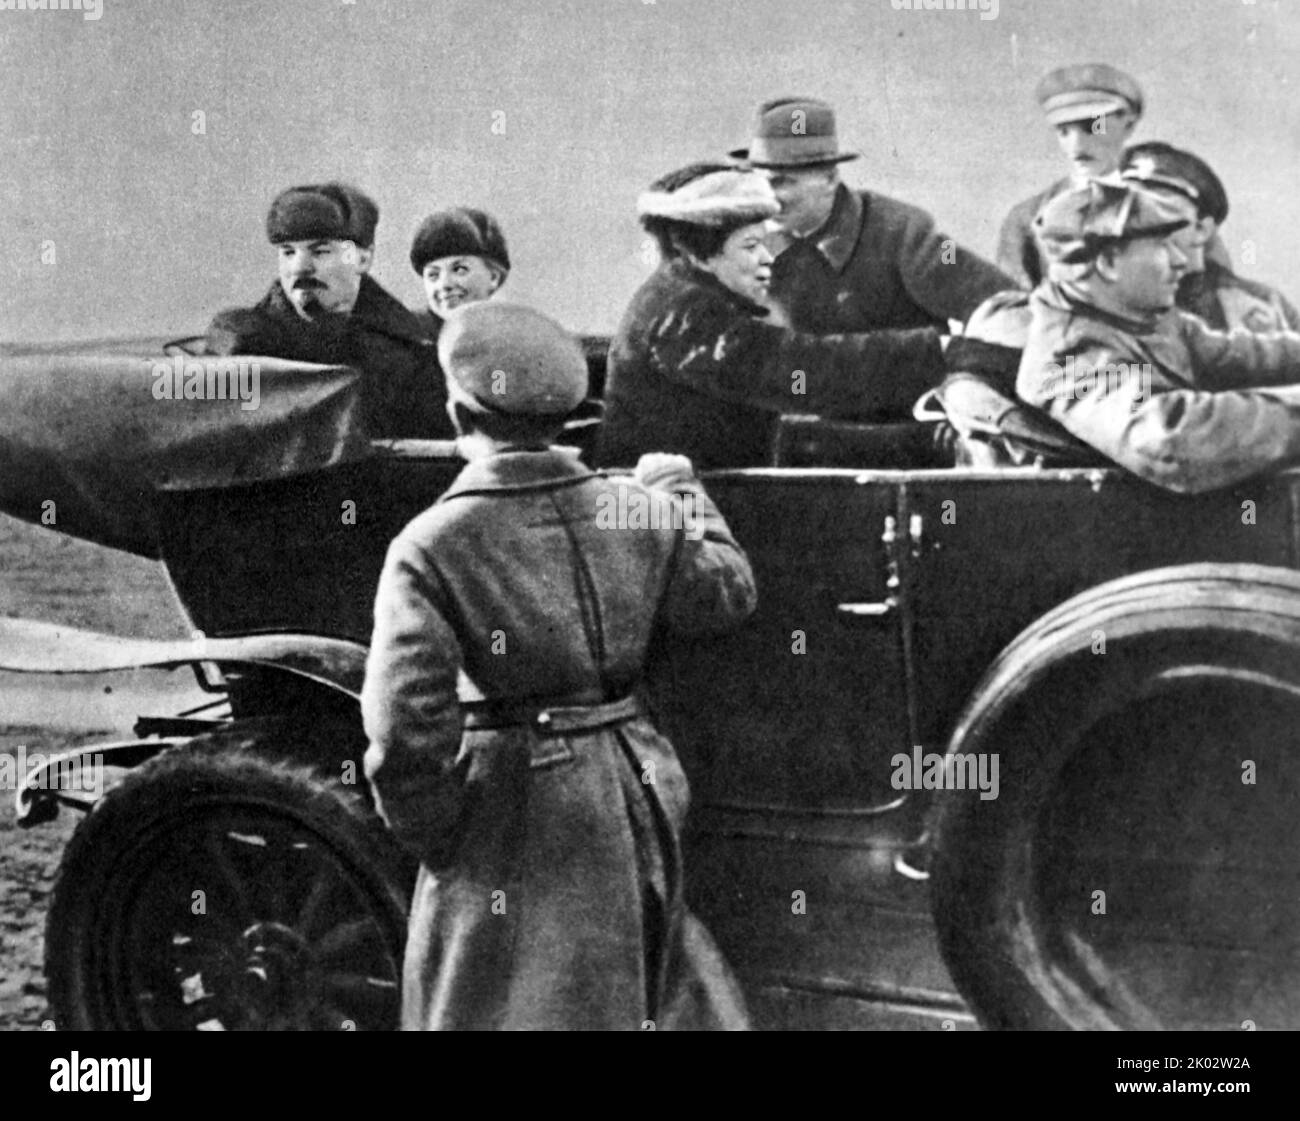 Vladimir Lenin, N. K. Krupskaya and M. I. Ulyanov before leaving Khodynskoye field after the military parade. Moscow, May 1, 1918. Photo by P. Novitsky. Stock Photo